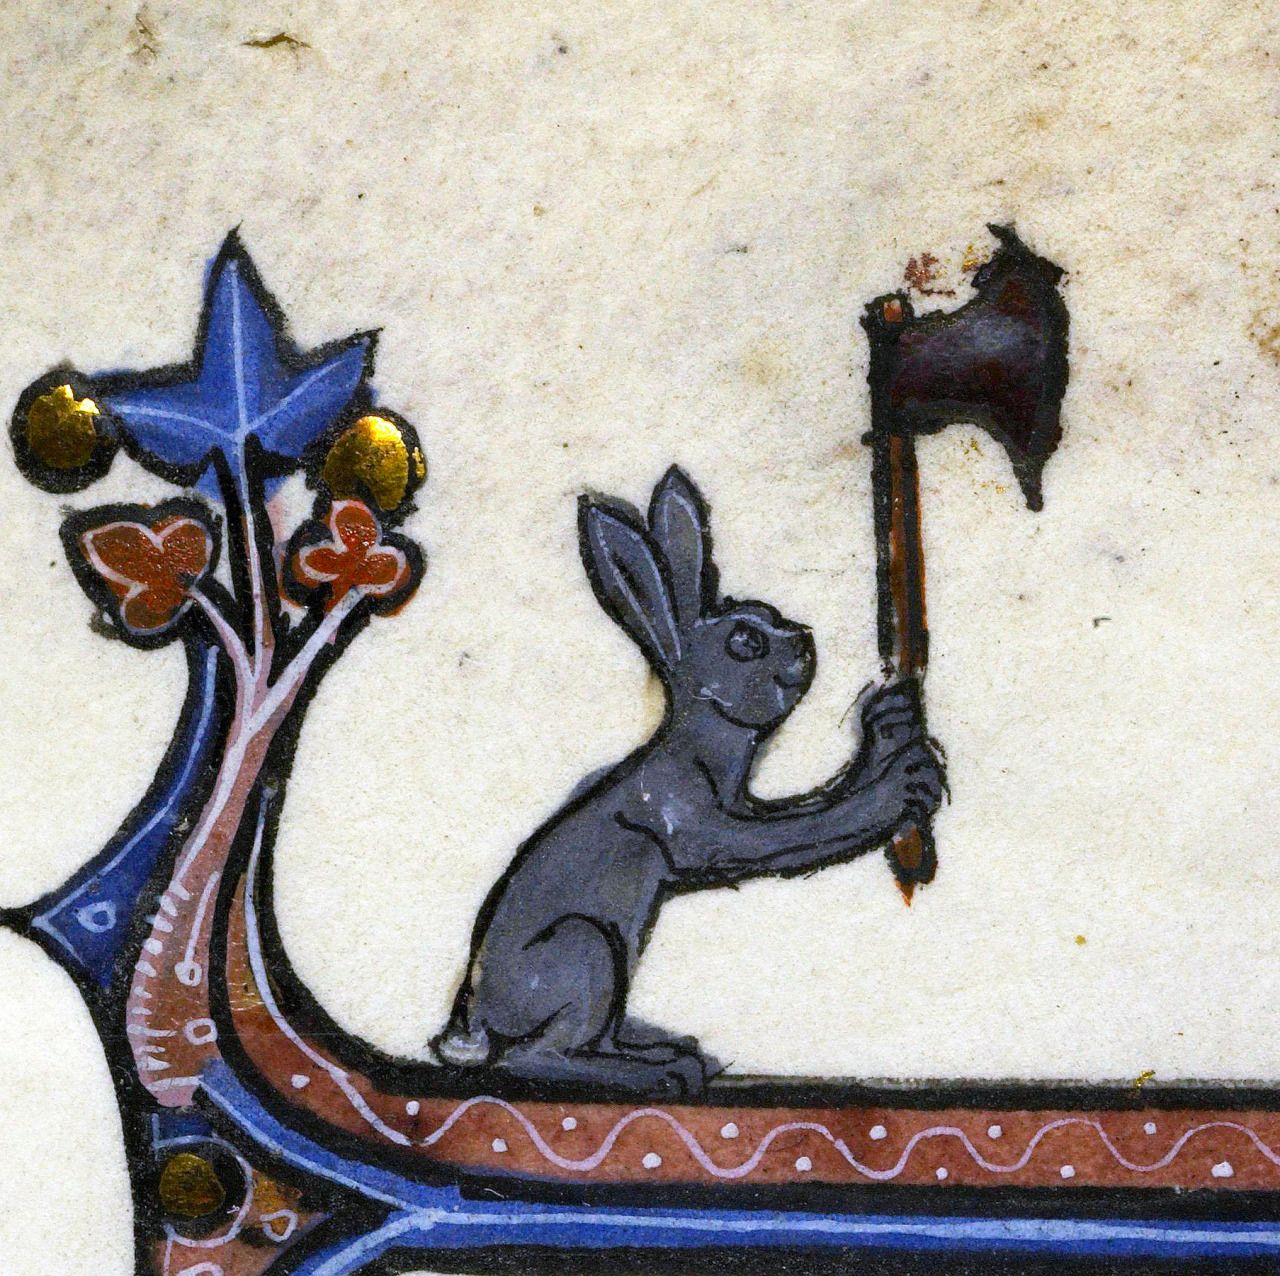 Le lapin tueur psychotique avec une hache by Artiste Inconnu - XIVe siècle Bibliothèque Interuniversitaire de la Sorbonne